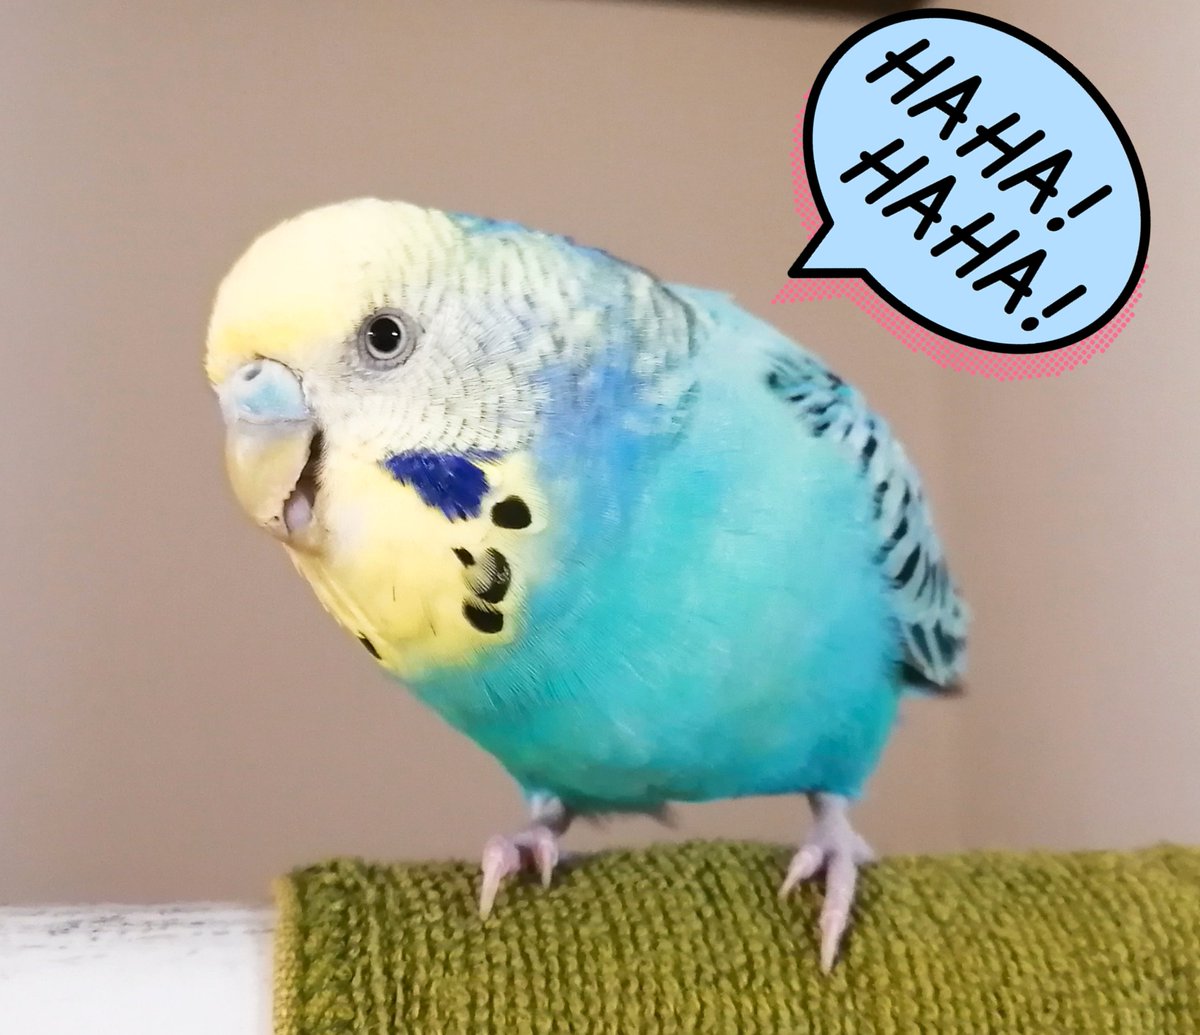 ころみ 放鳥タイム Popが壁紙を噛んでた 怒られるかな みたいな顔でこちらを見てる 嘲笑うかのような表情 笑 セキセイインコ セキセイpop 鳥好き